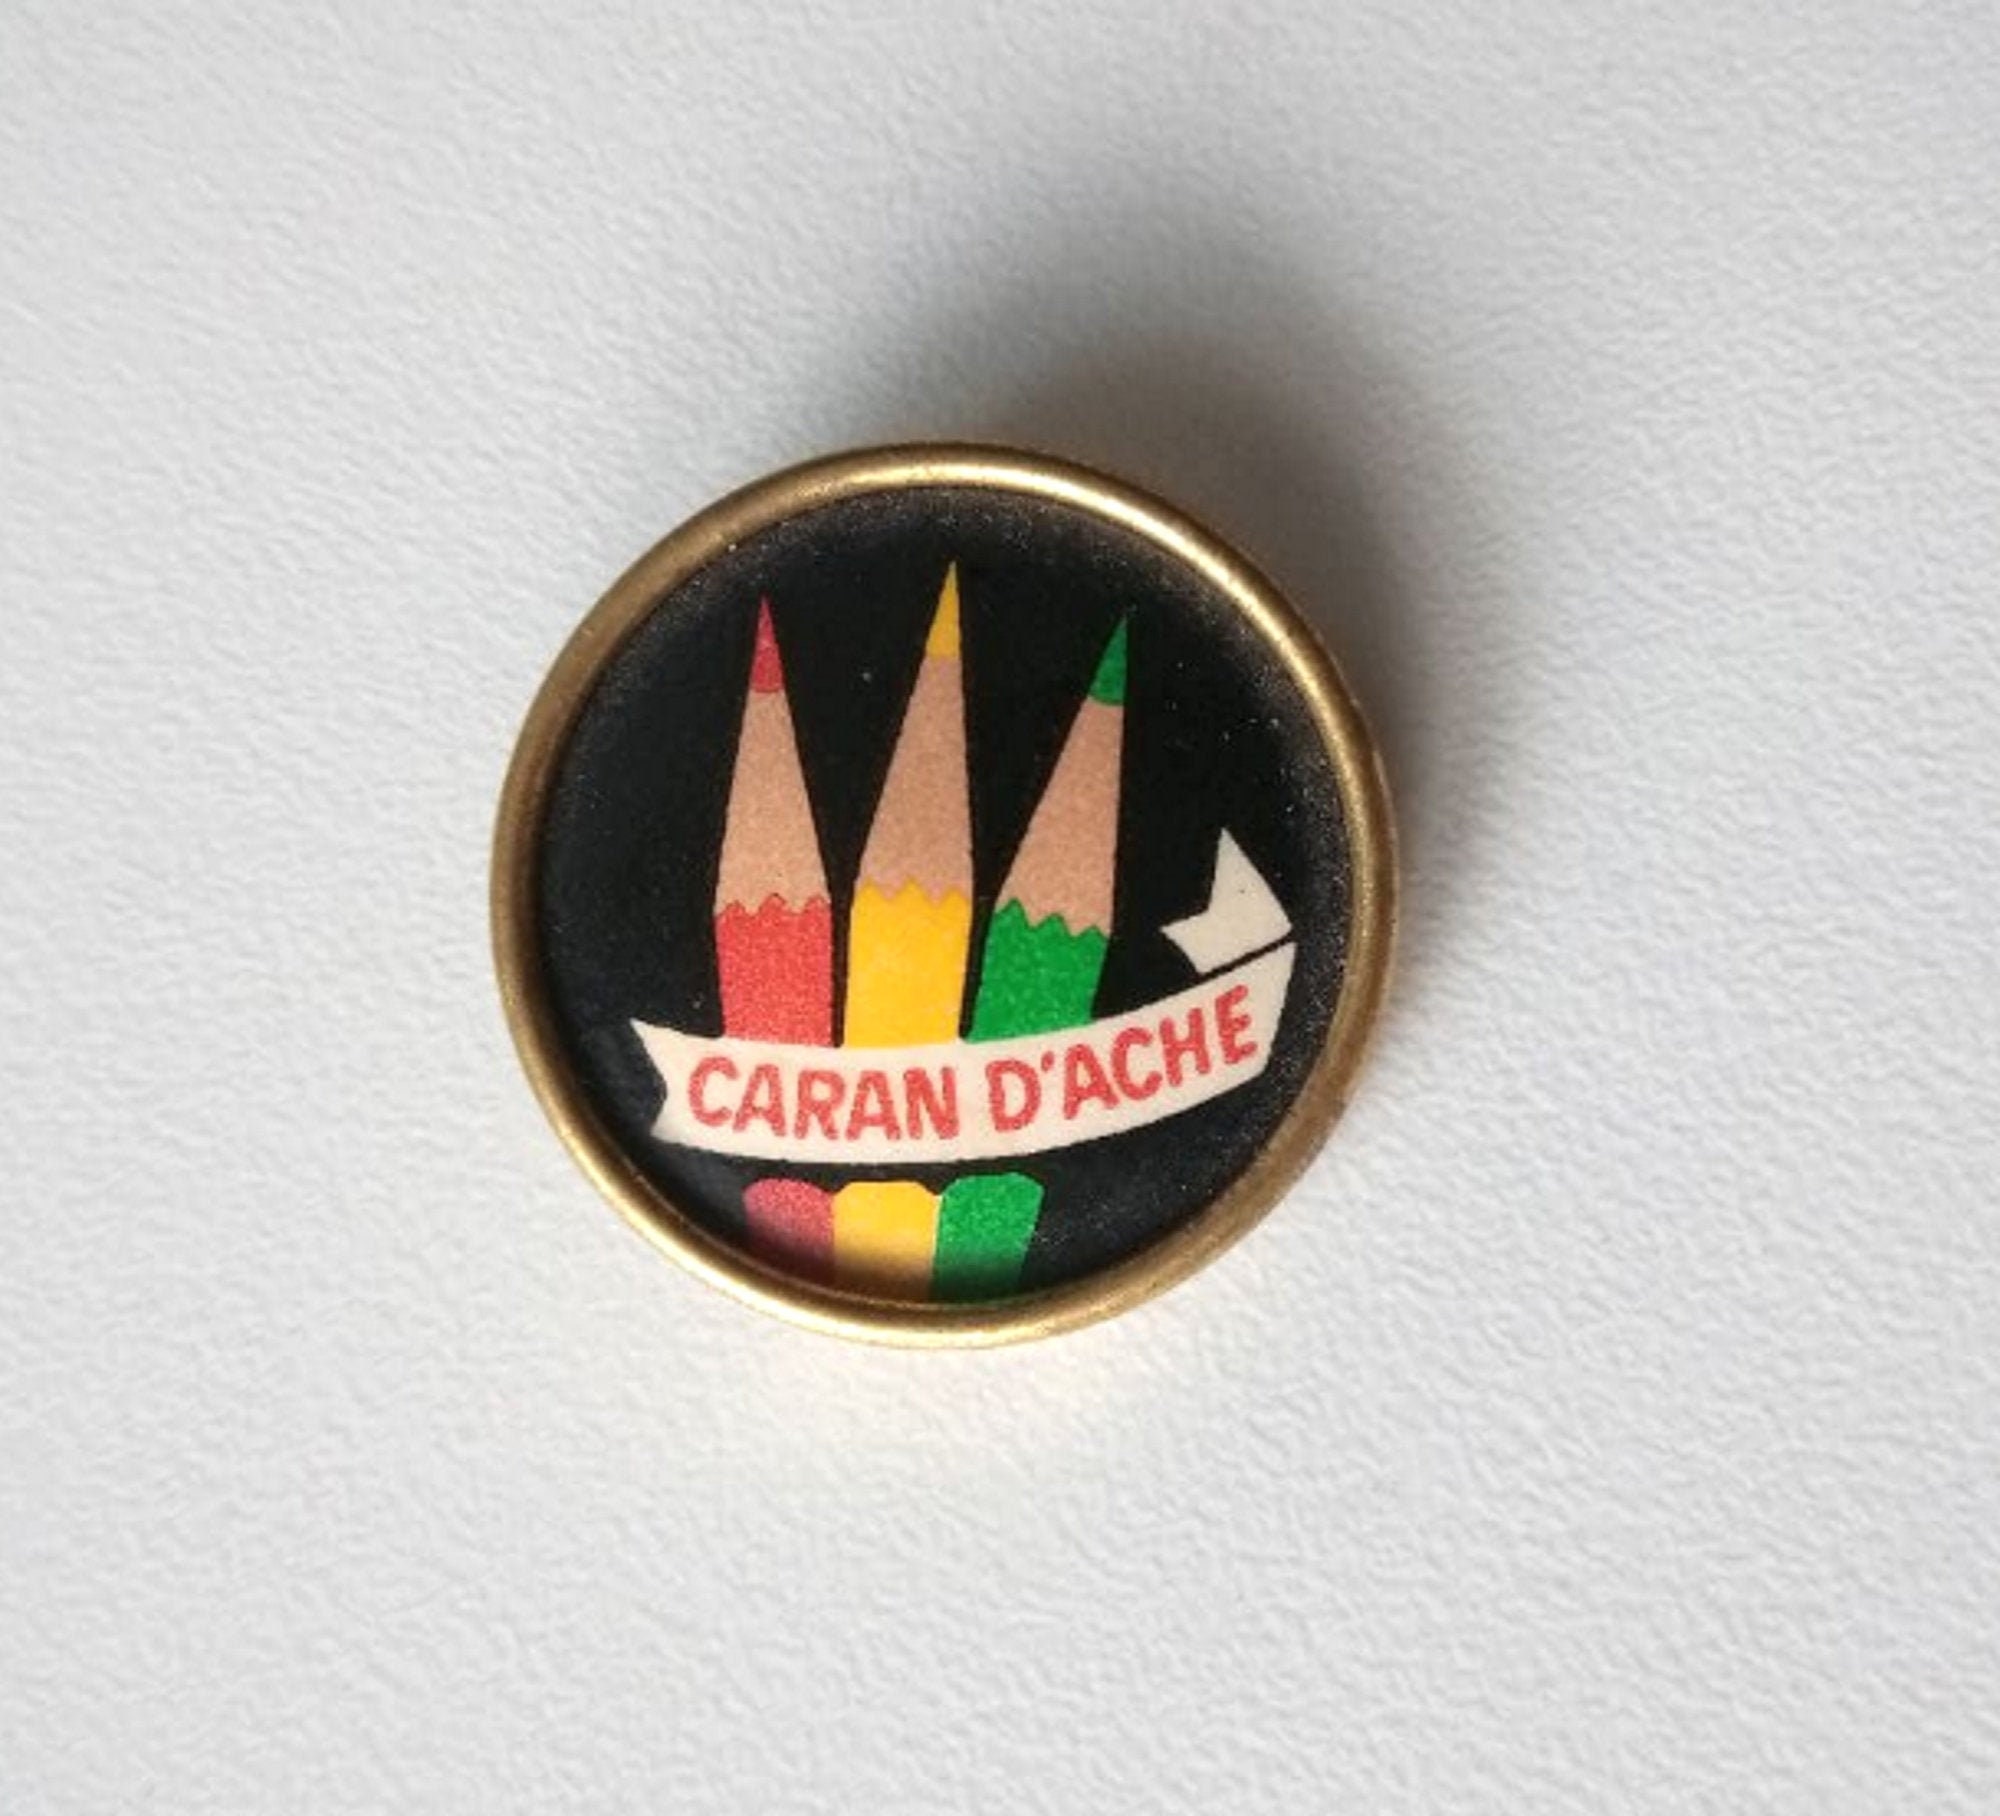 Vintage CARAN D'ACHE Crayons brooch Logo pin badge 1960s Drawing Writing 